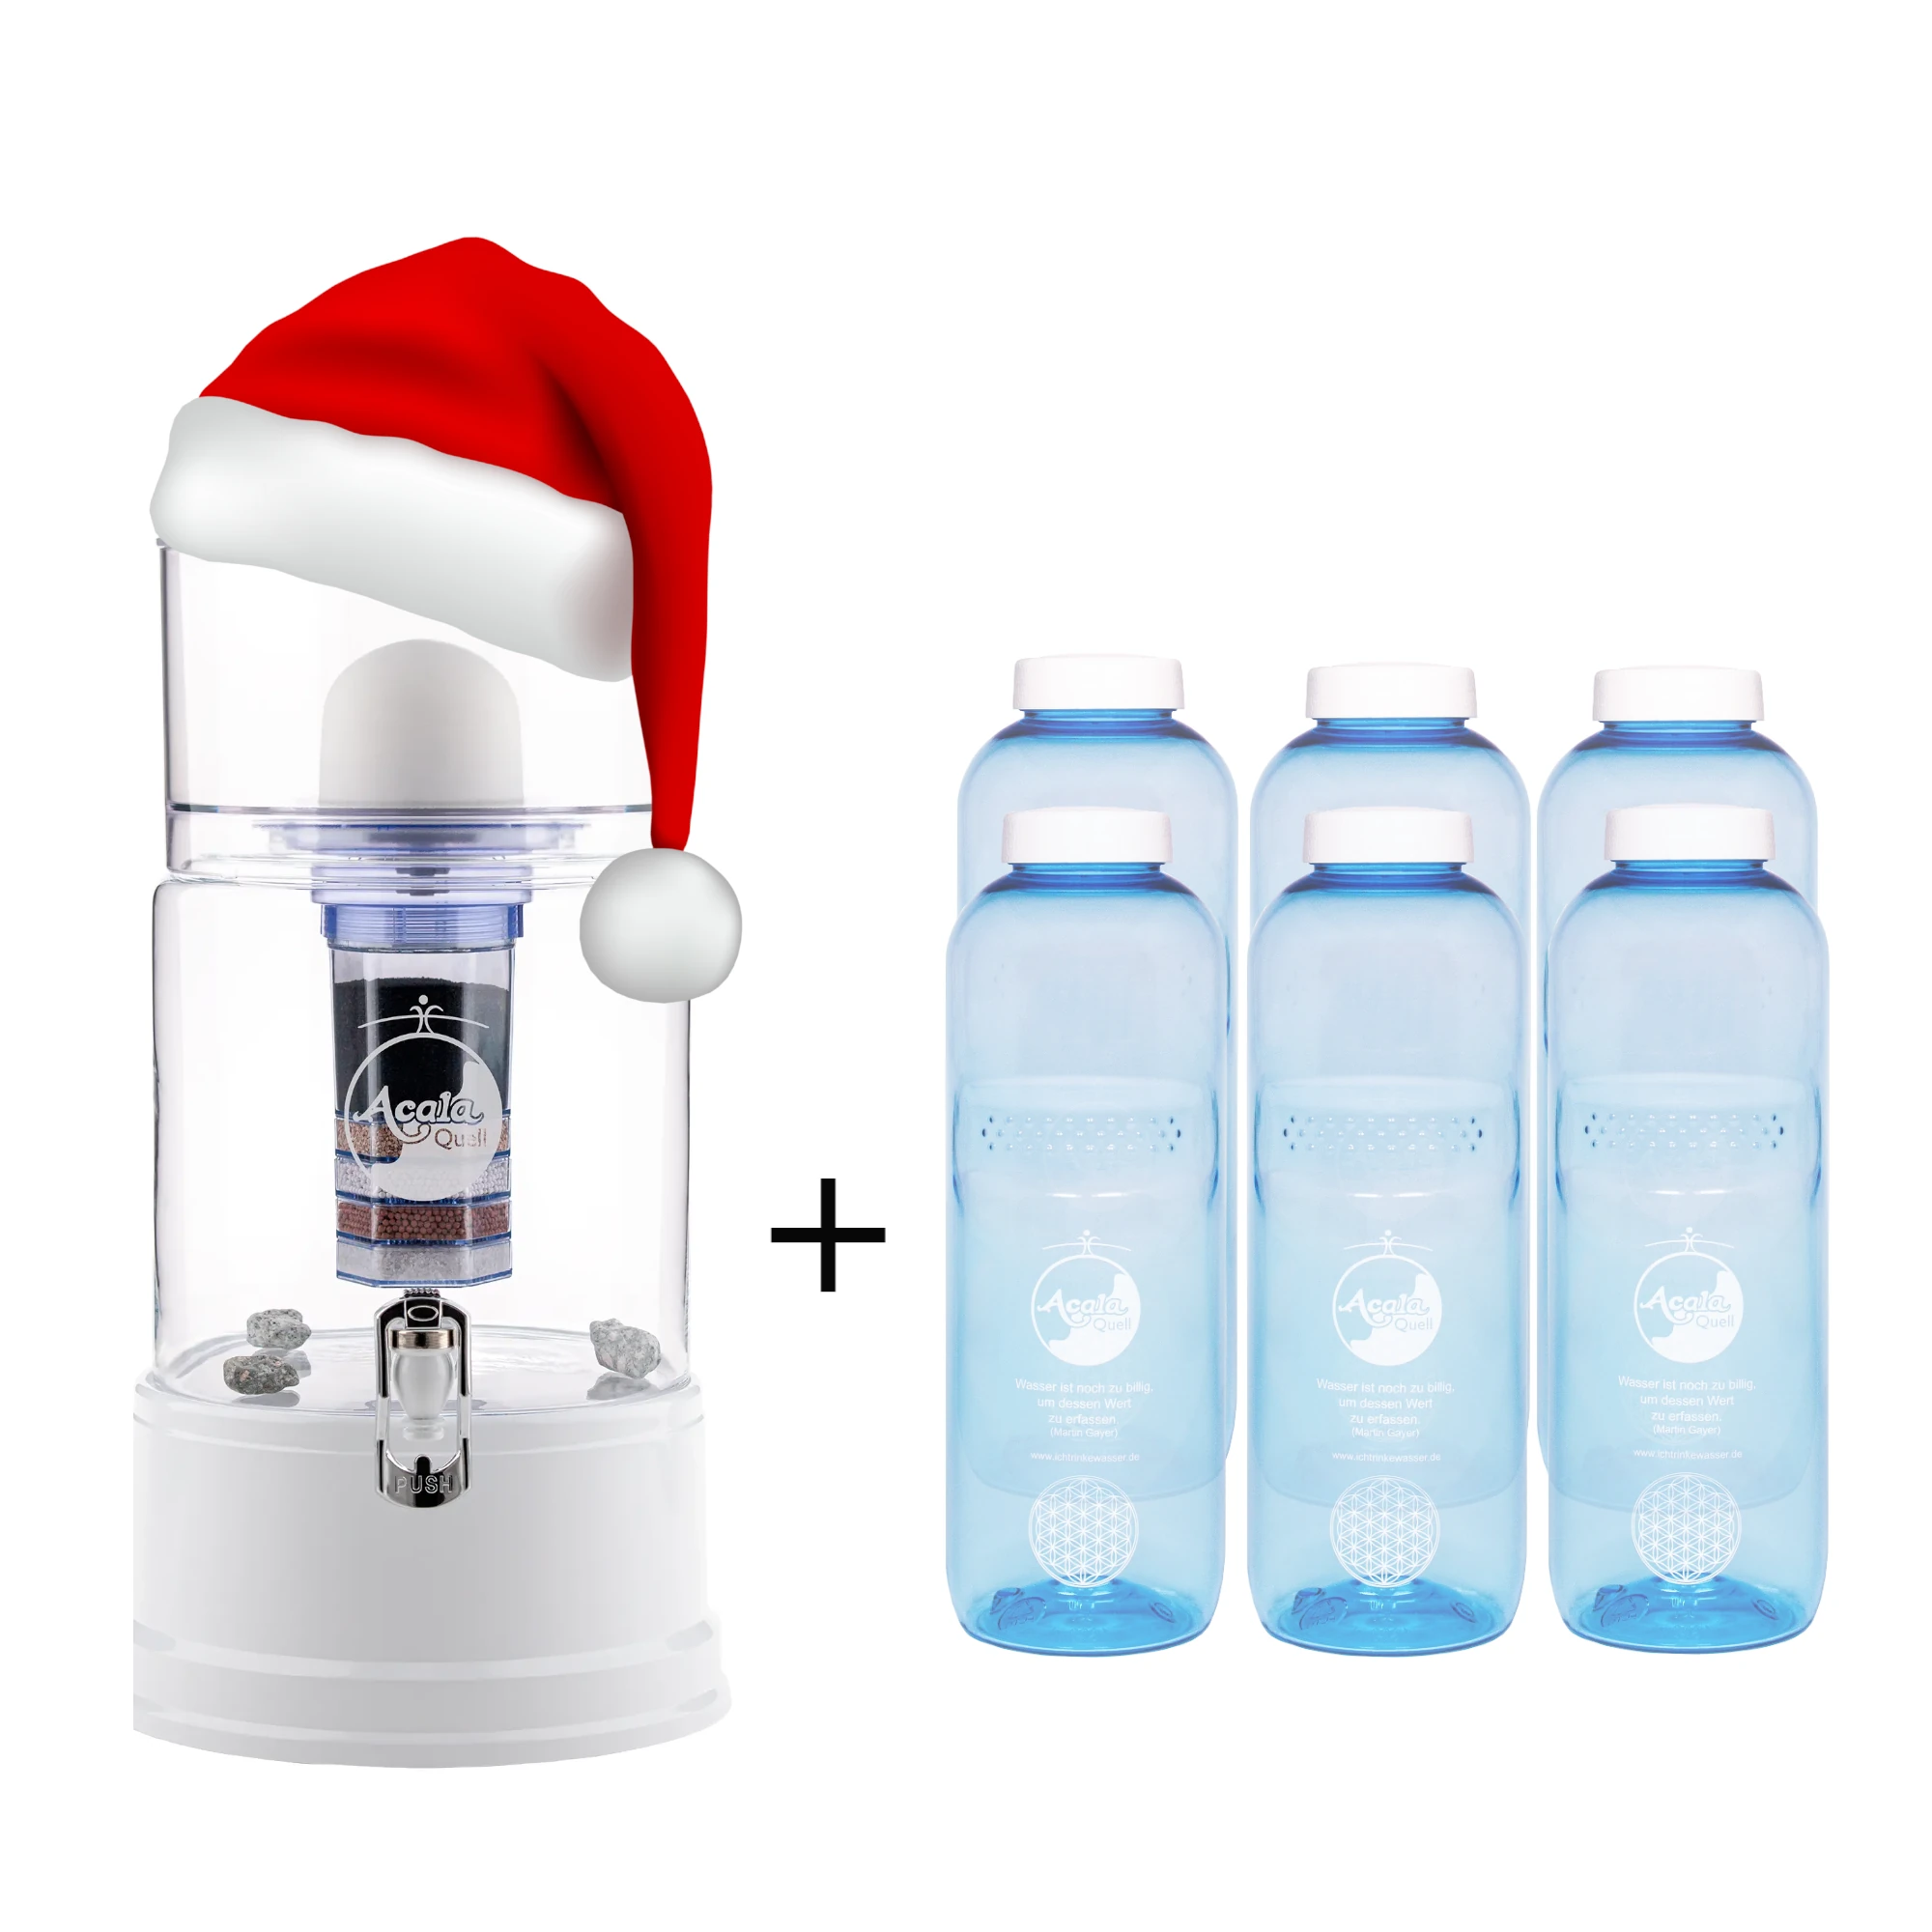 Standwasserfilter von Acala mit Glastank in kristallklar, Deckel, Sockel und Wasserhahn in weiß. Daneben sechs blaue Tritan Trinkflaschen mit weißem Schraubdeckel. Der Filter hat eine Weihnachtsmann Mütze auf. Das Bild zeigt ein Weihnachtsangebot.